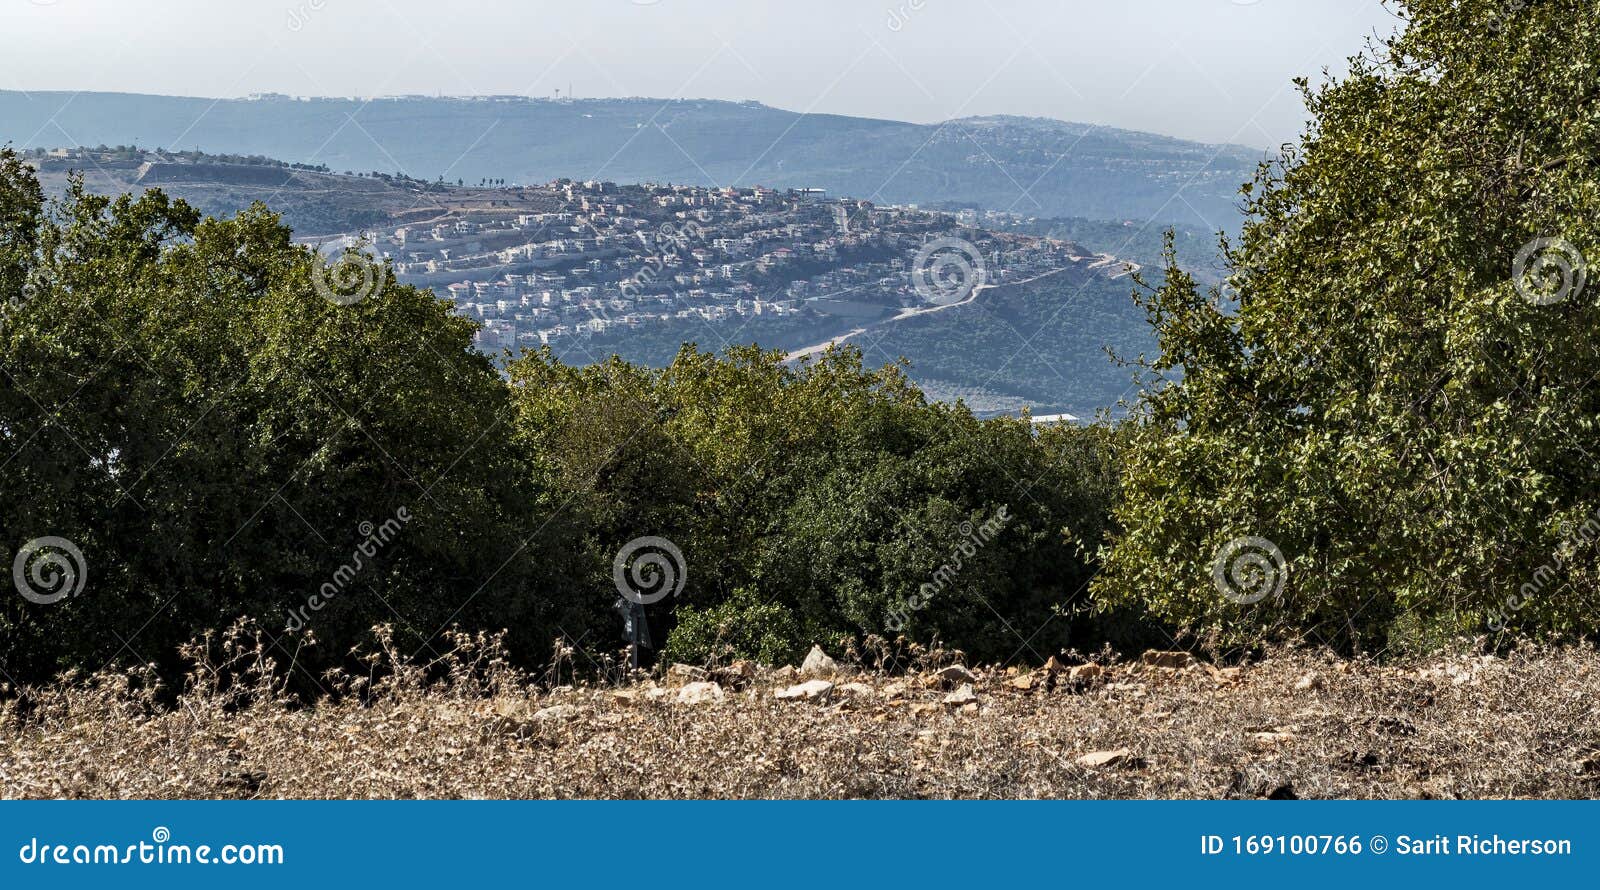 kibbutz sasa from mount adir viewpoint in israel